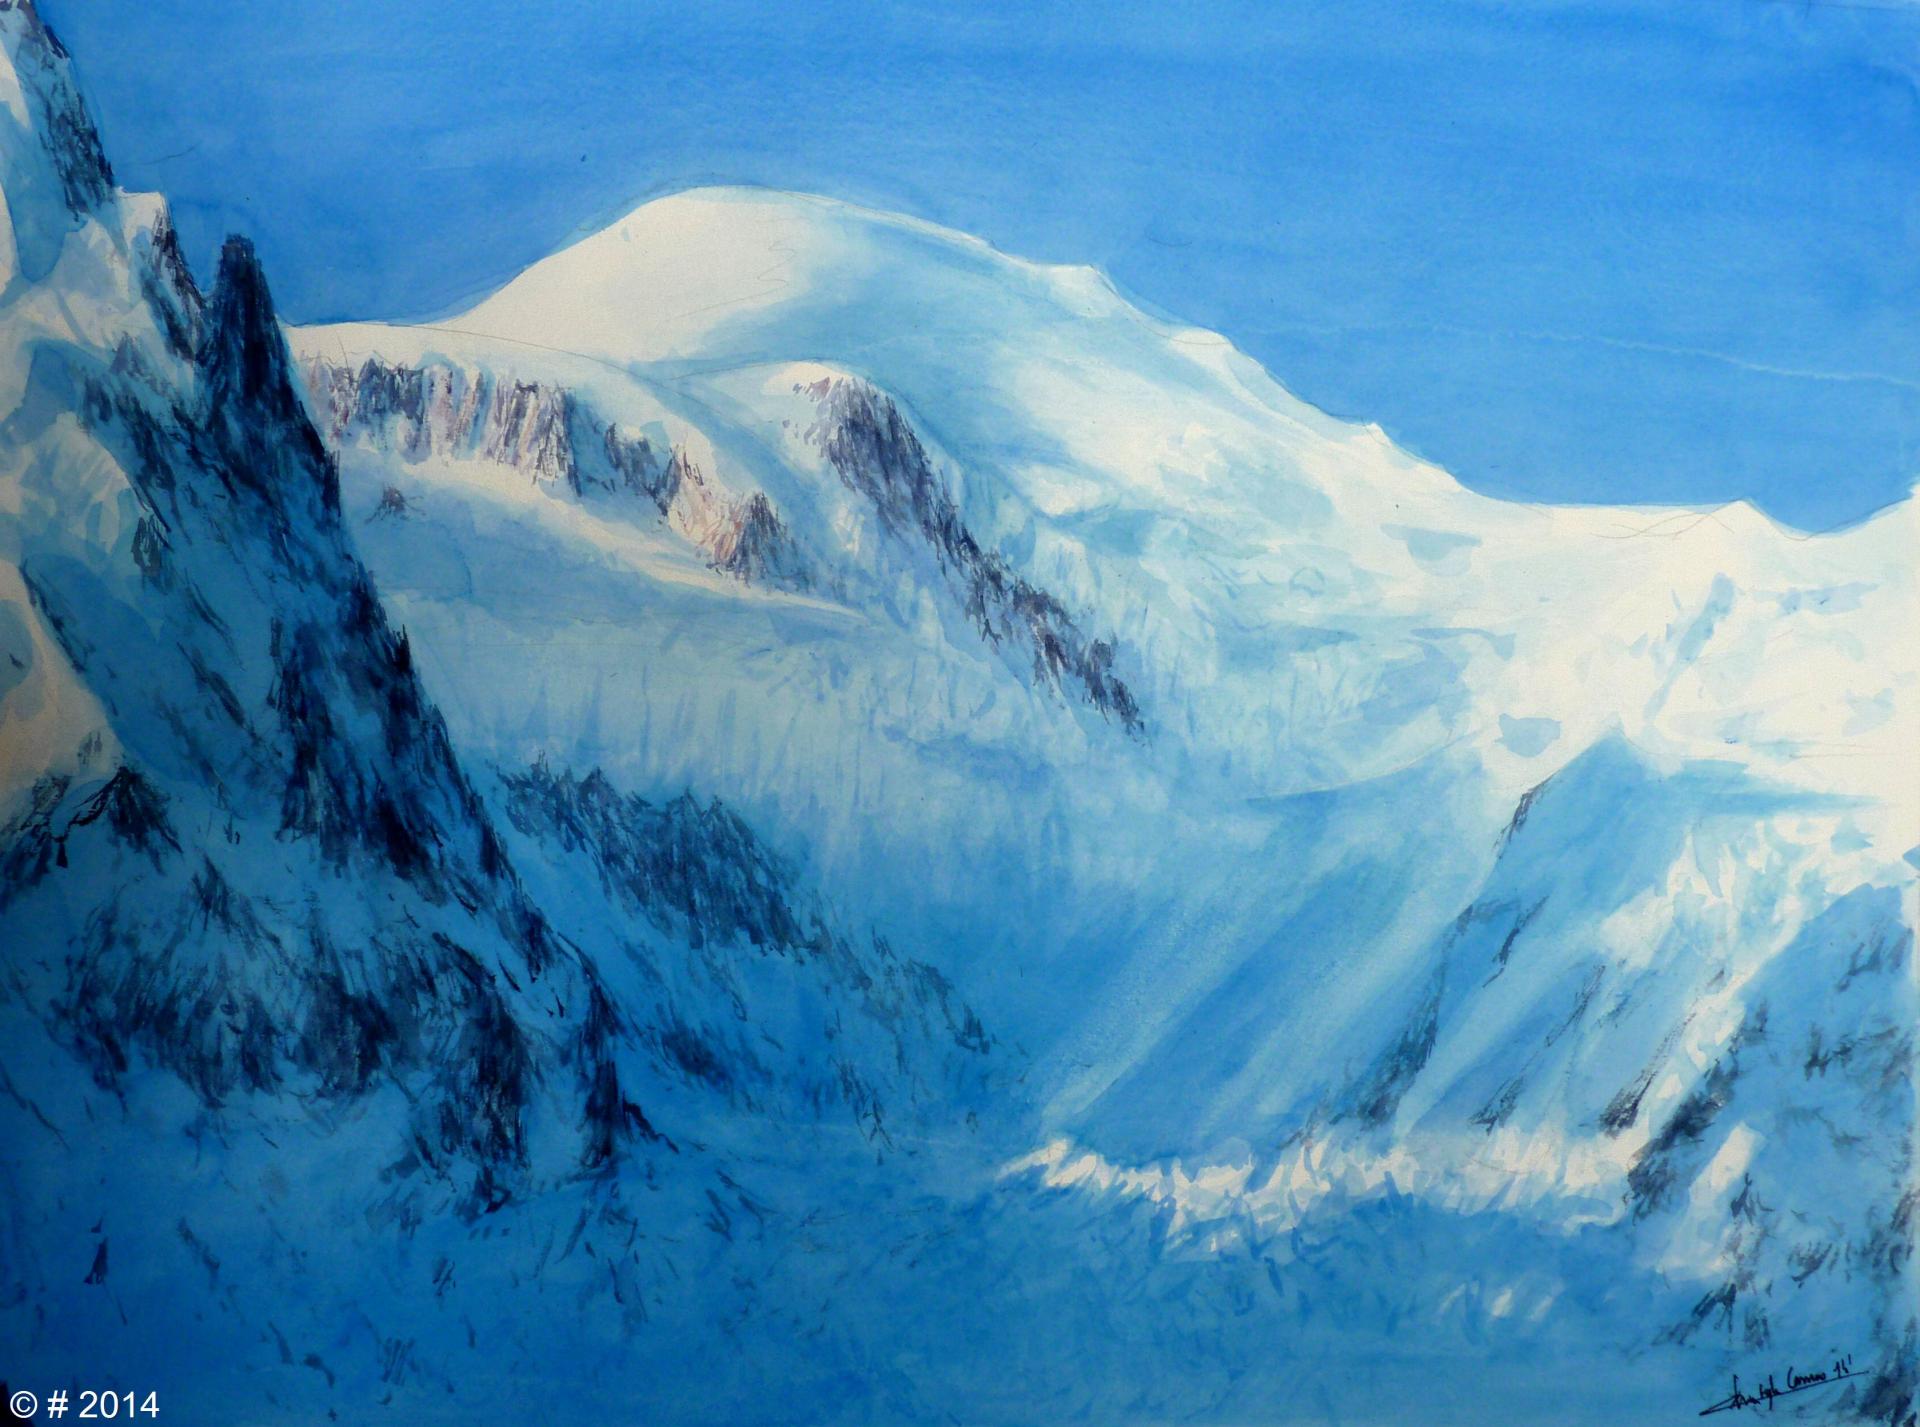 Le Mont Blanc (4810m)